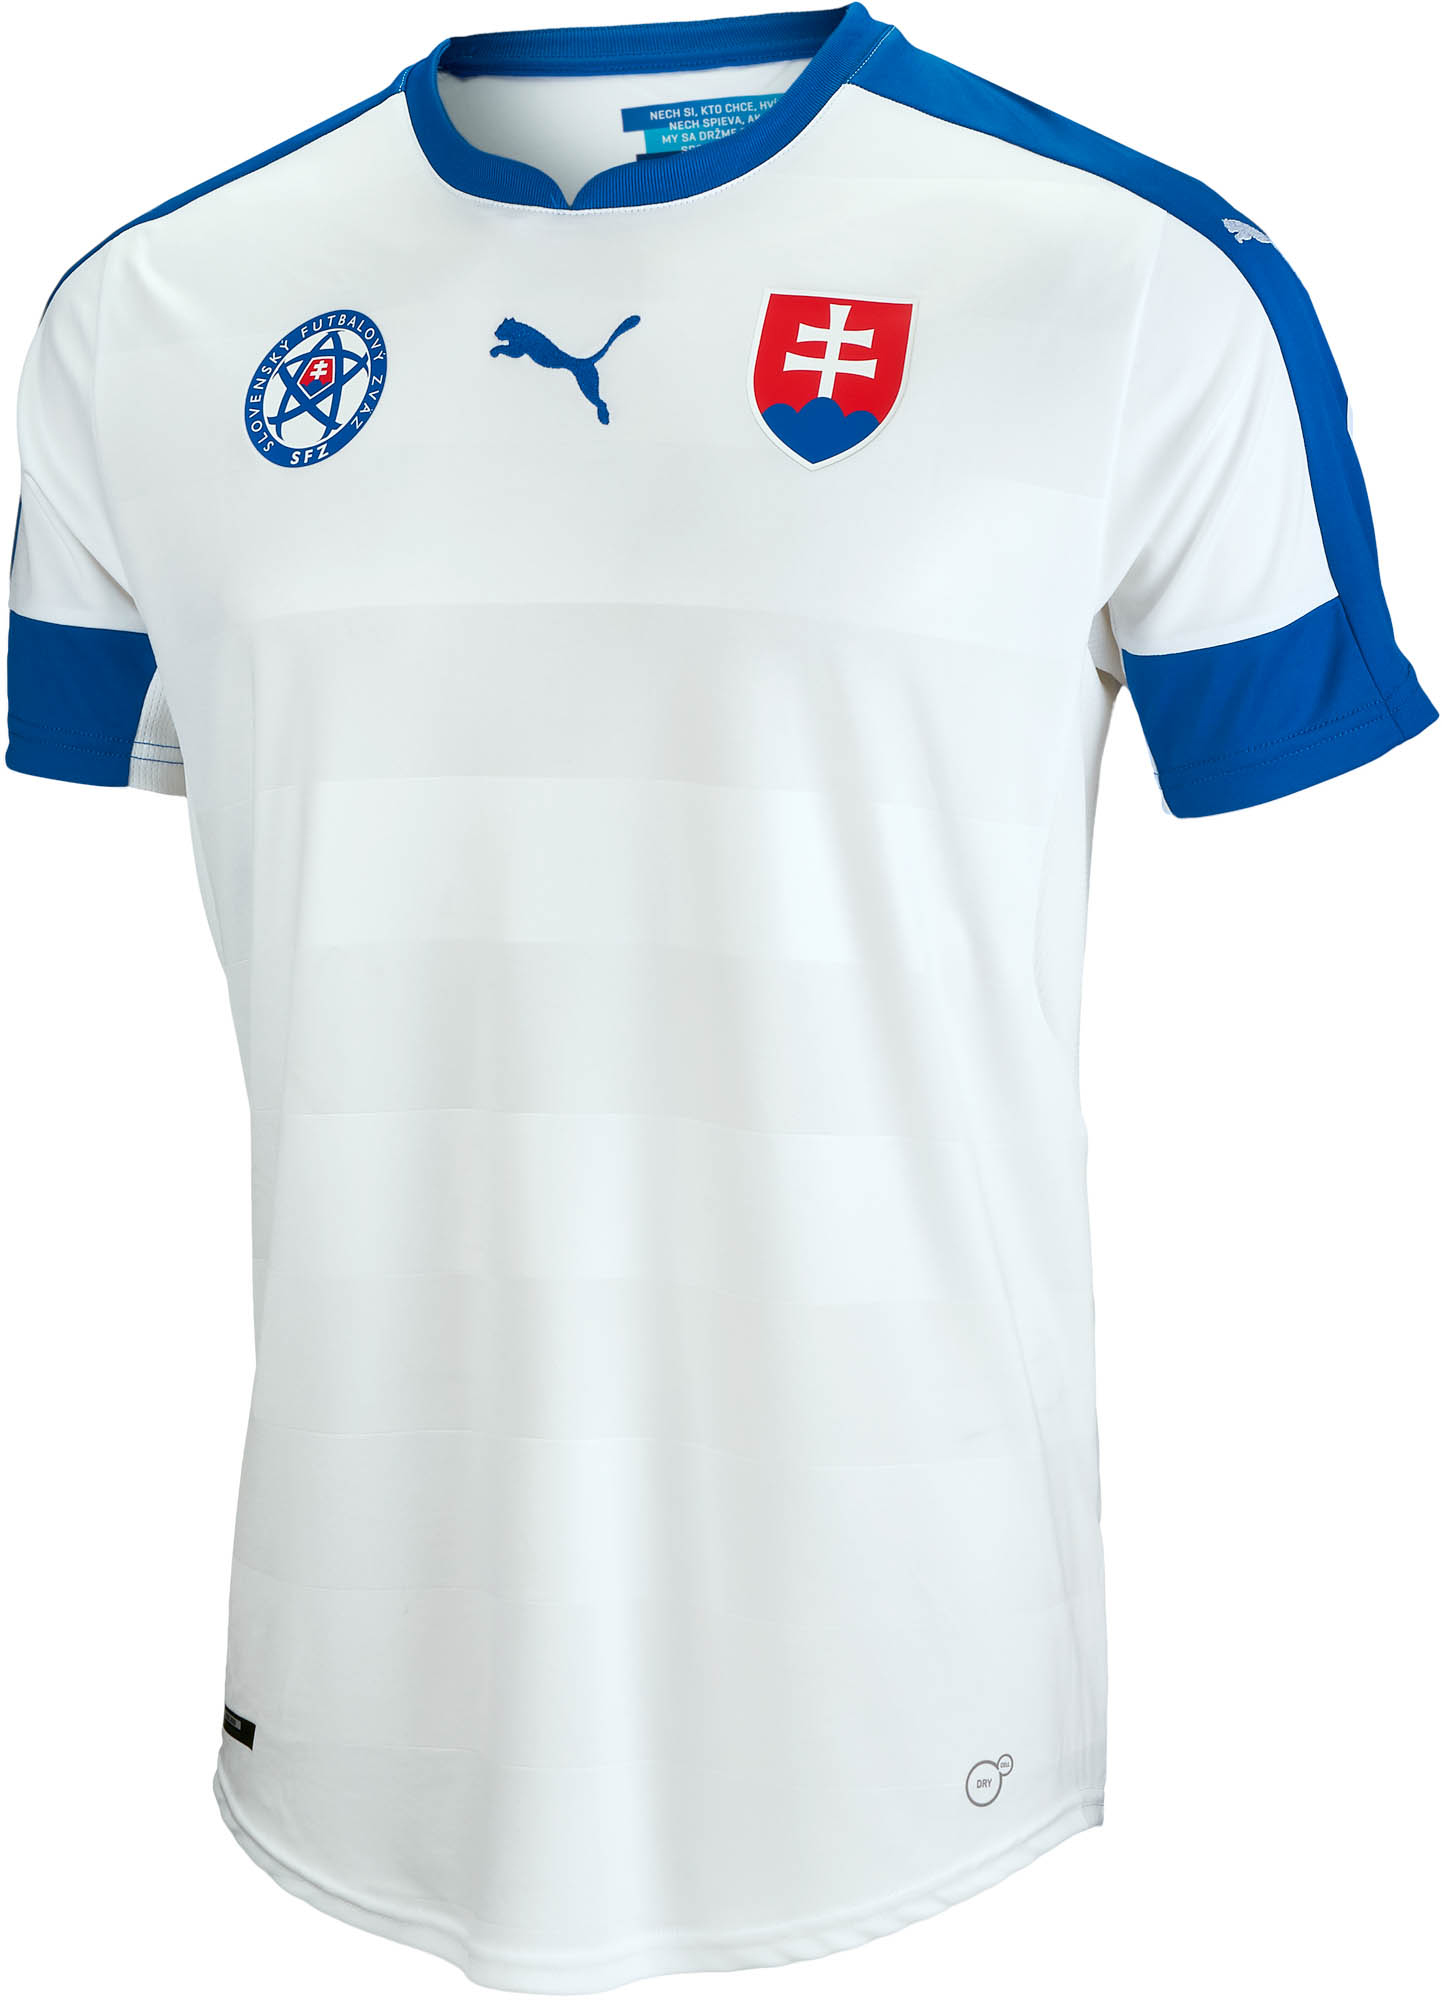 slovakia jersey